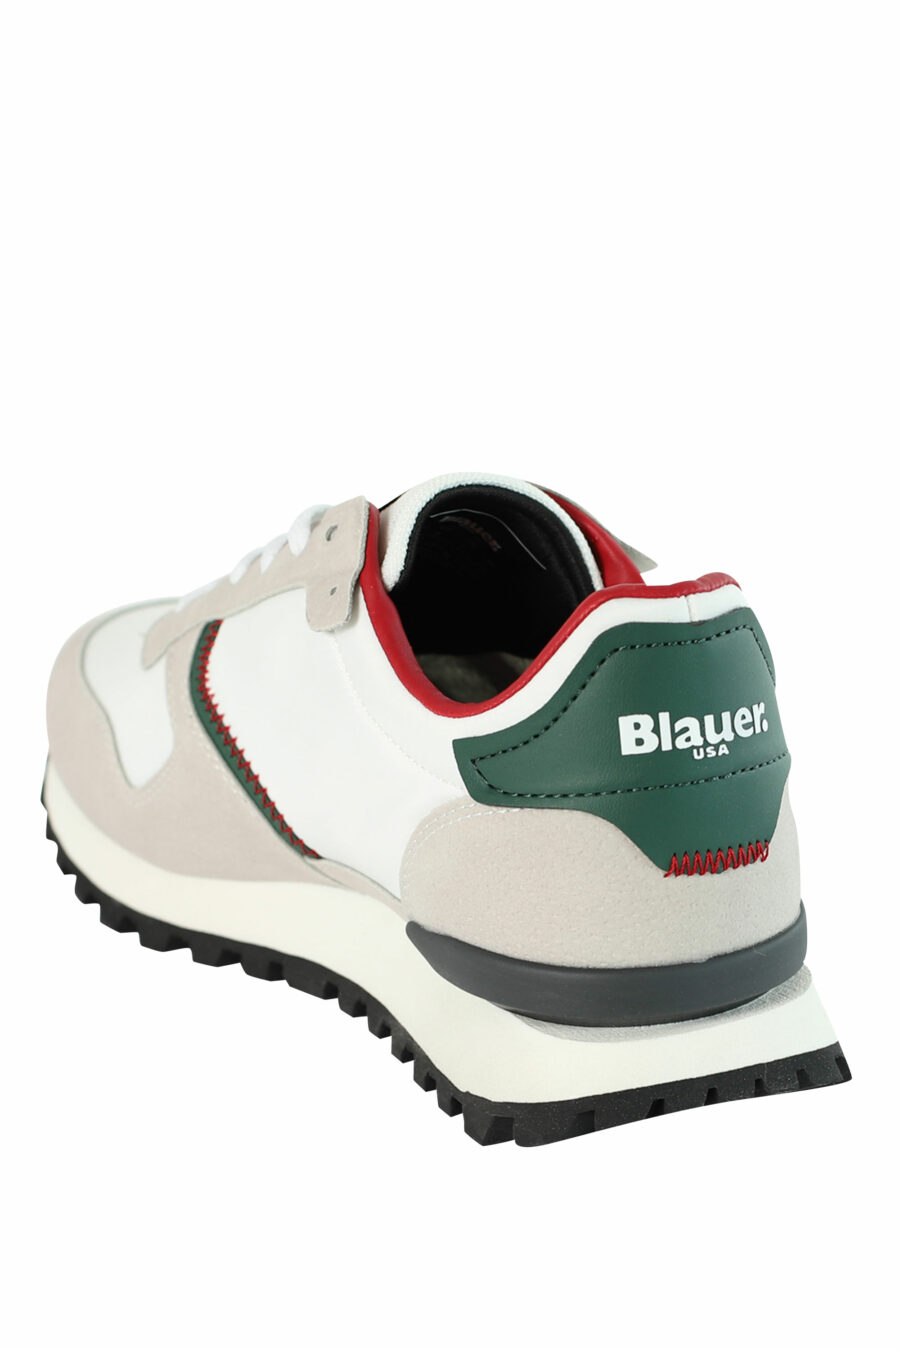 Zapatillas "DIXON" blancas mix con detalles rojos y verdes - 8058156493902 4